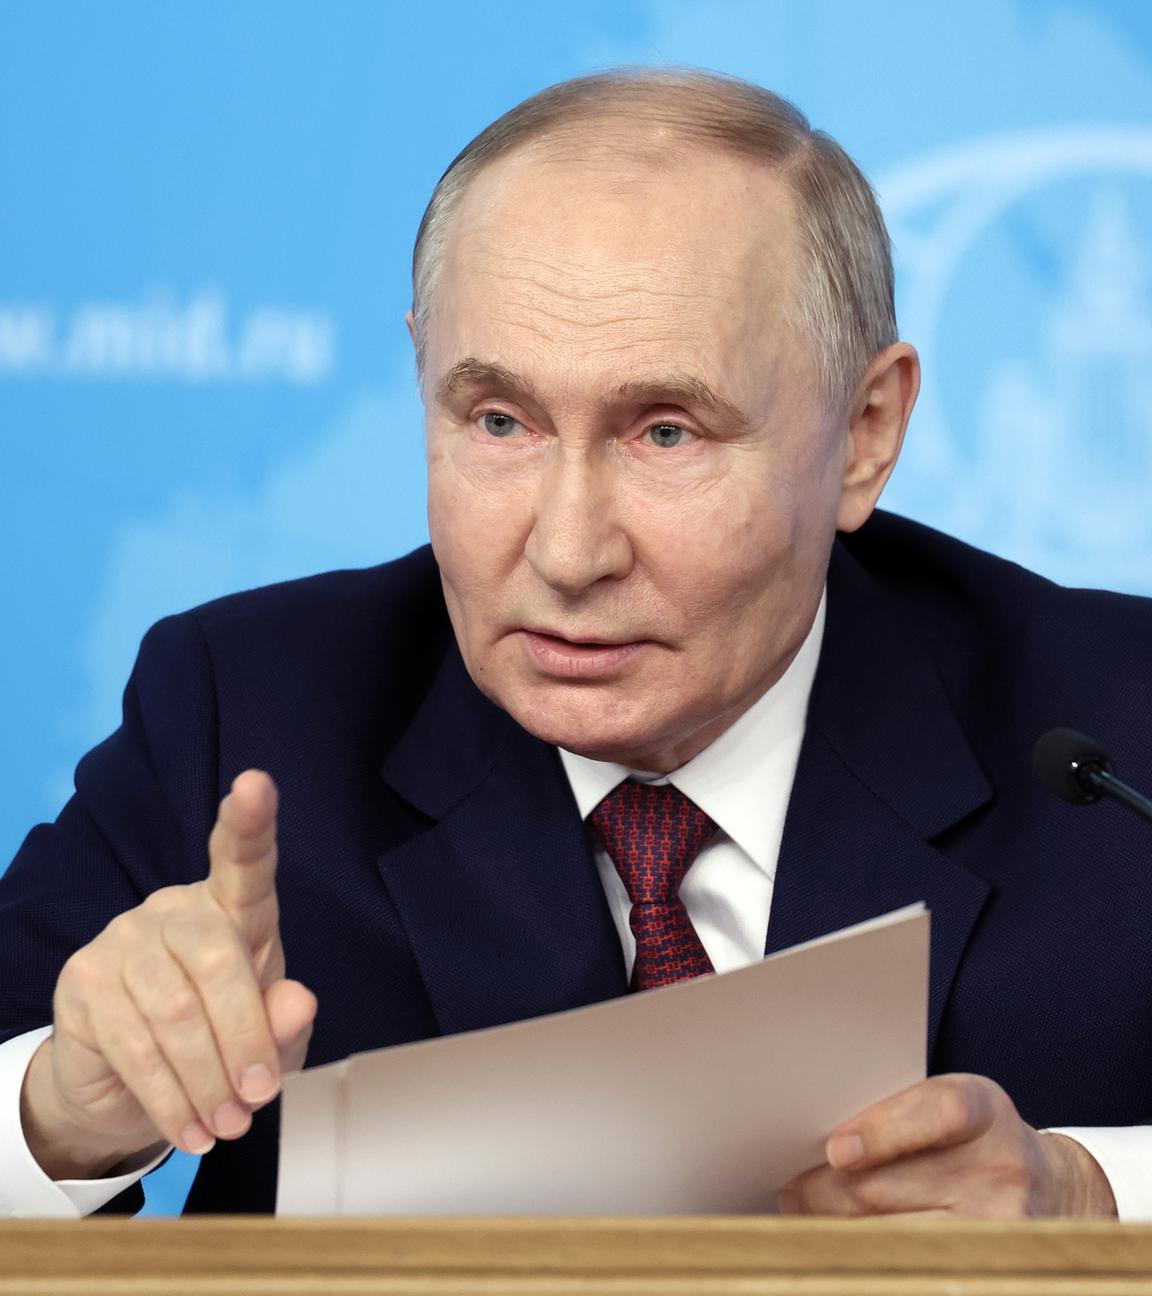 Der russische Präsident Wladimir Putin auf einer Pressekonferenz des Außenministeriums, bei dem er seine Forderungen für Friedensgespräche mit der Ukraine vorstellte.